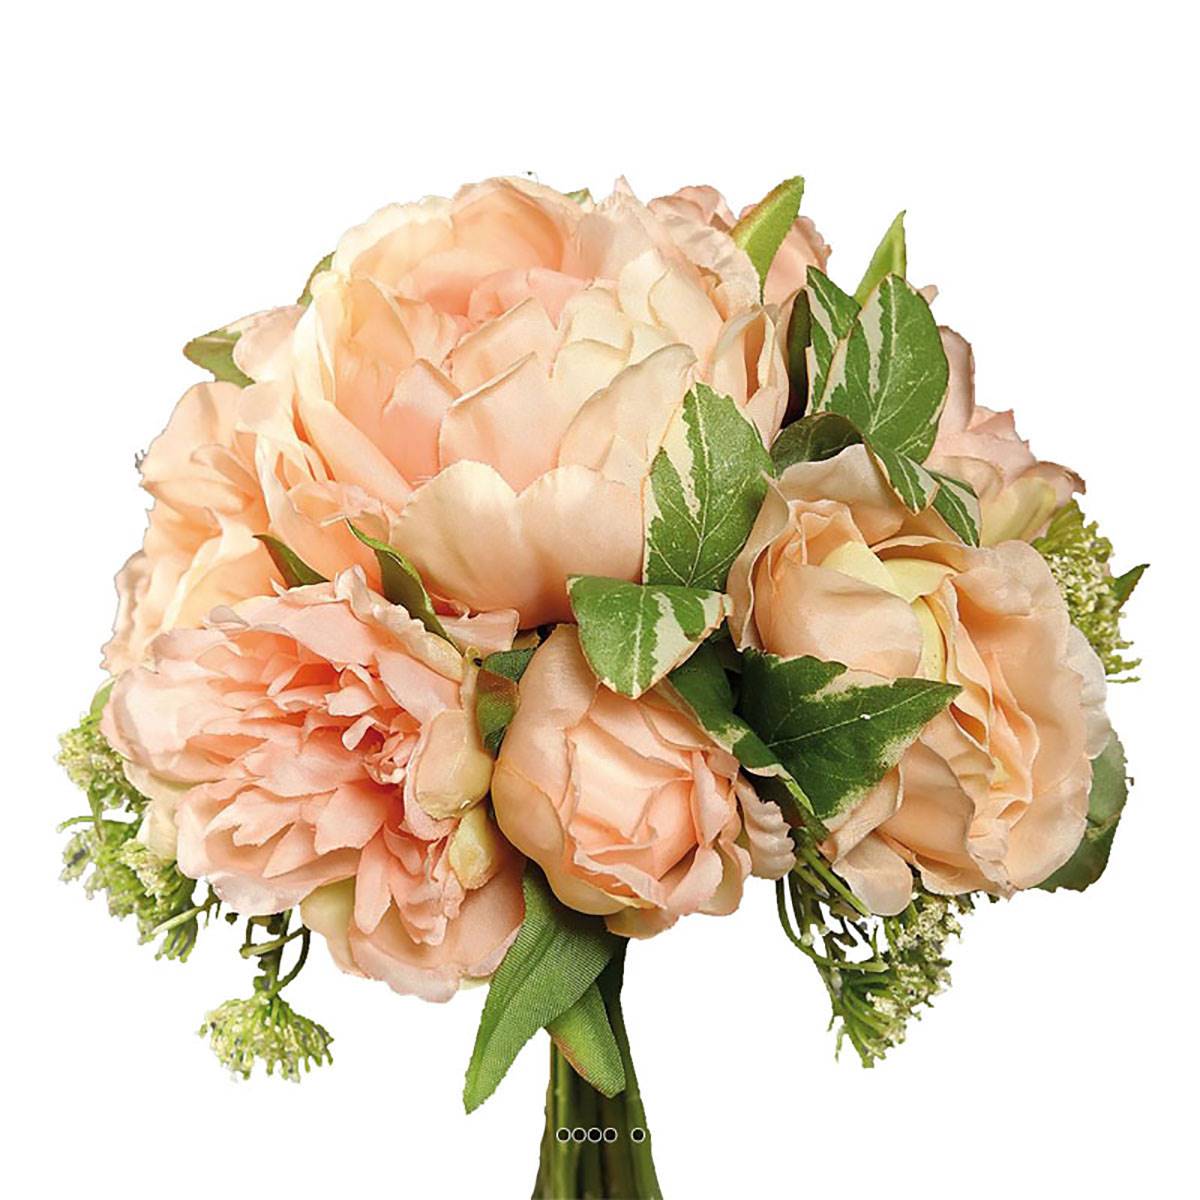 Bouquet pivoines &carottes sauvages factice 7 fleurs h20cm rose saumon - couleur